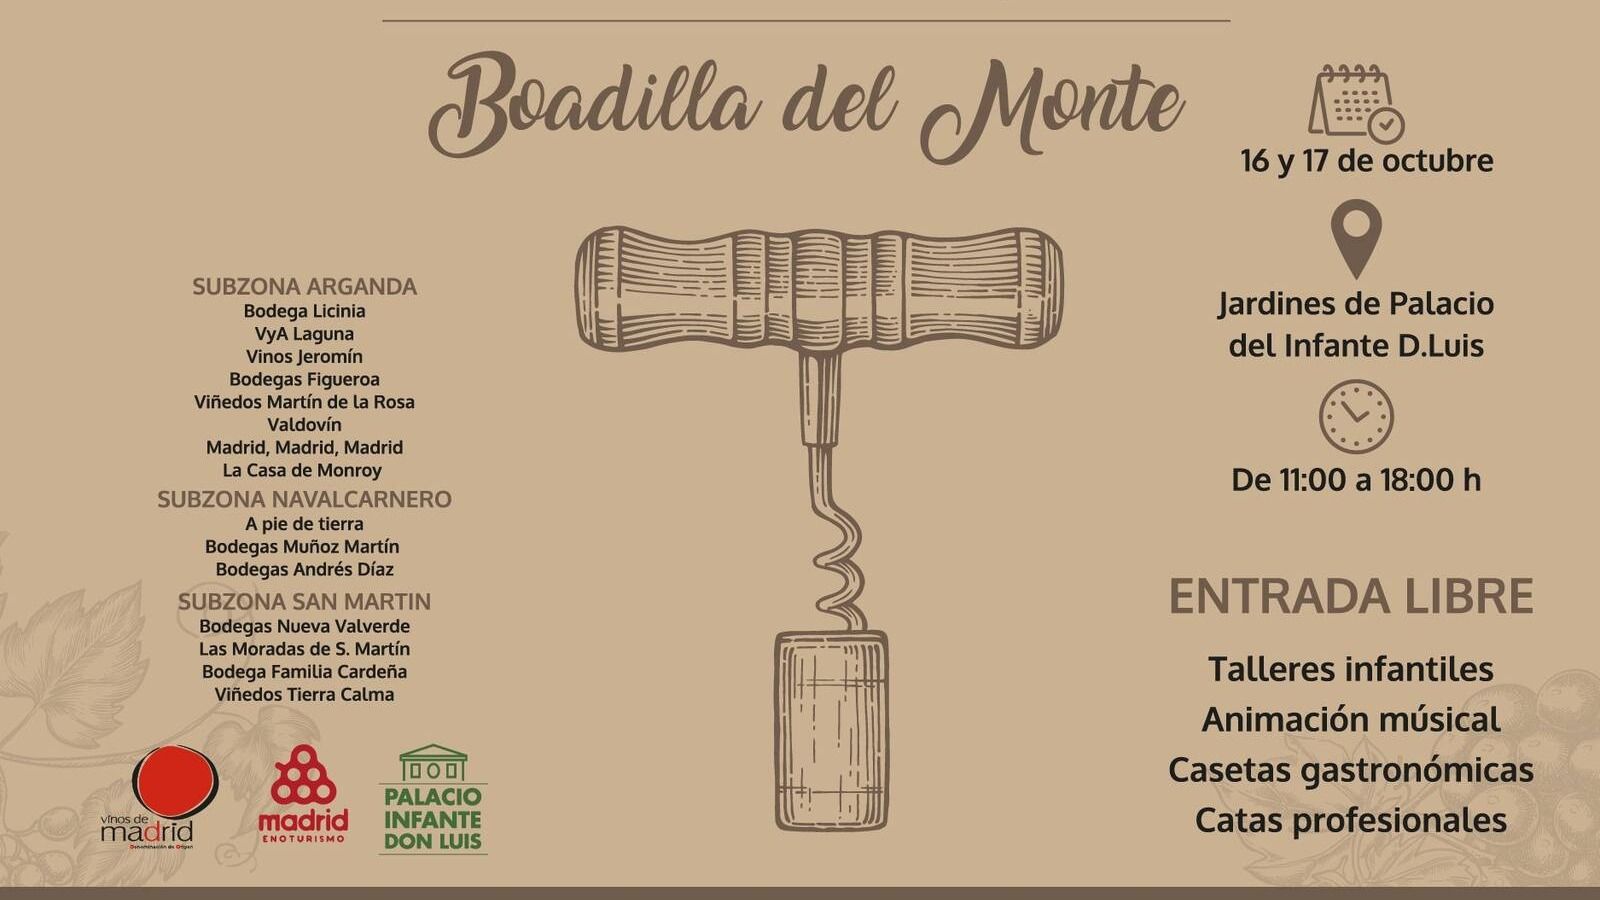 Los mejores vinos de Madrid llegan al Palacio de Boadilla el 16 y 17 de octubre